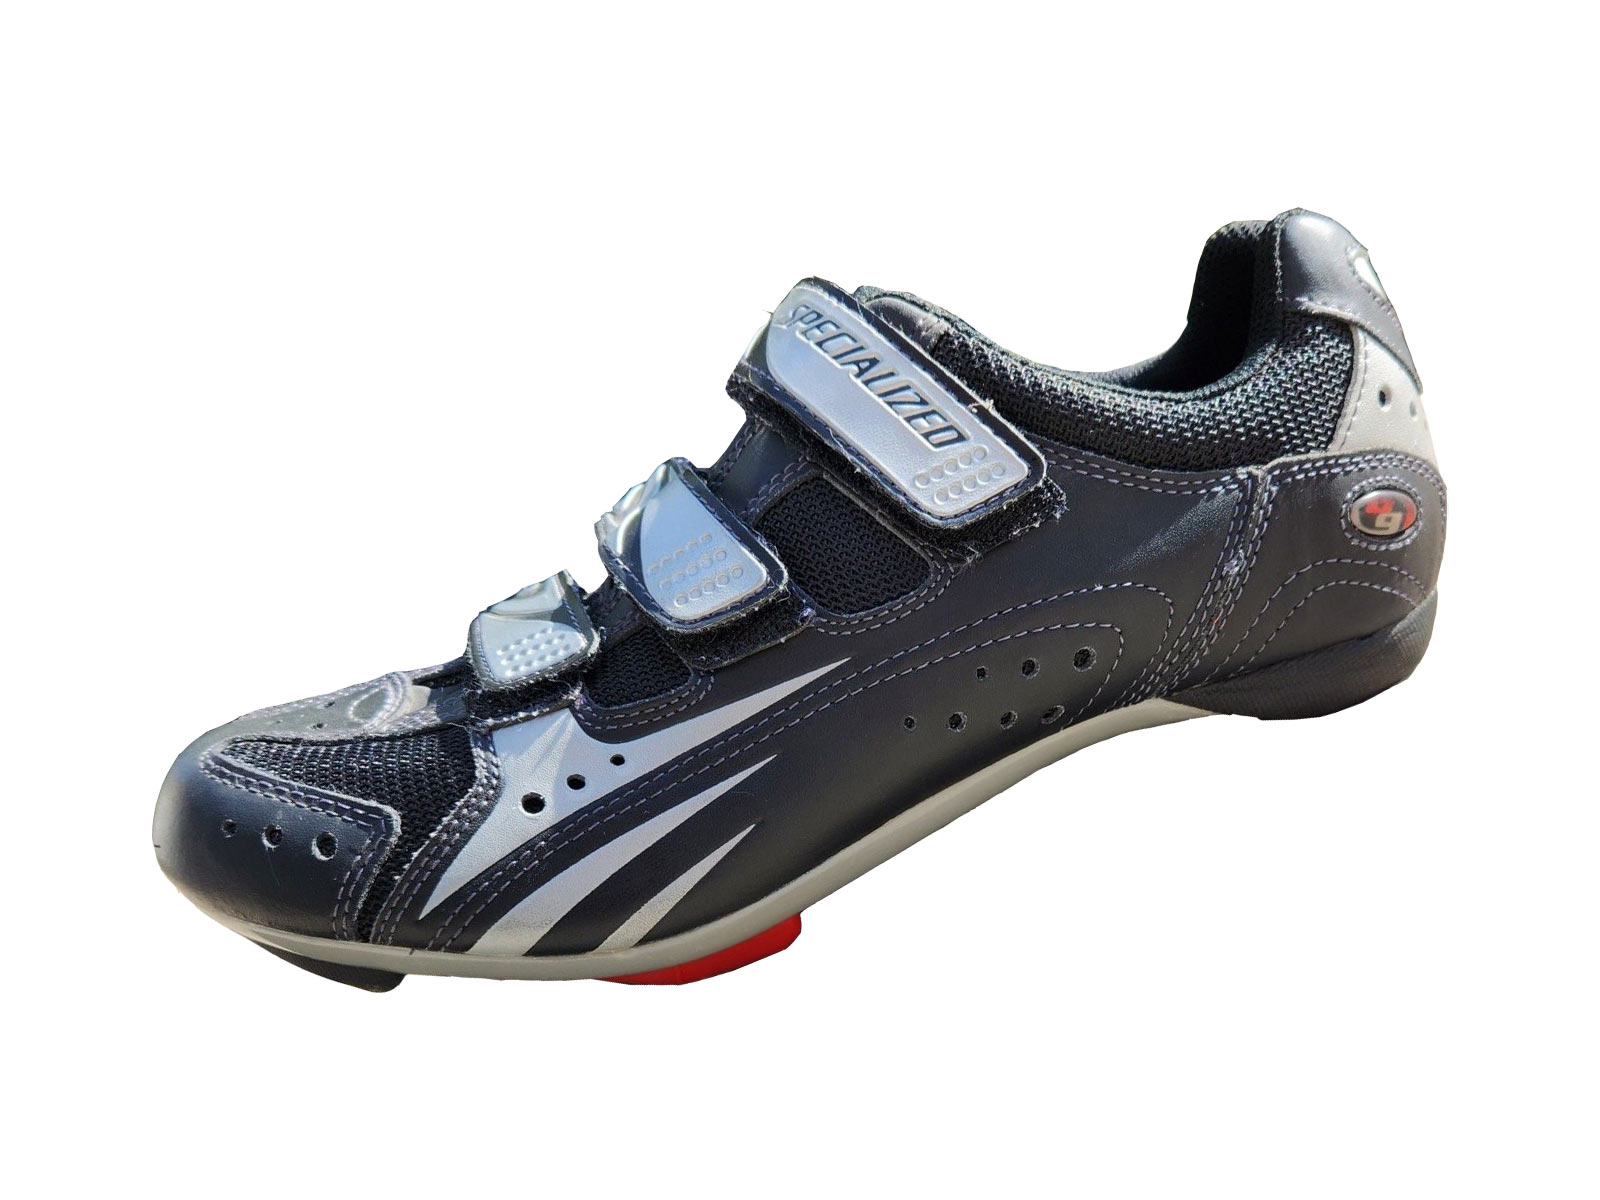 Παπούτσια Specialized BG Sport Road - Black / Silver